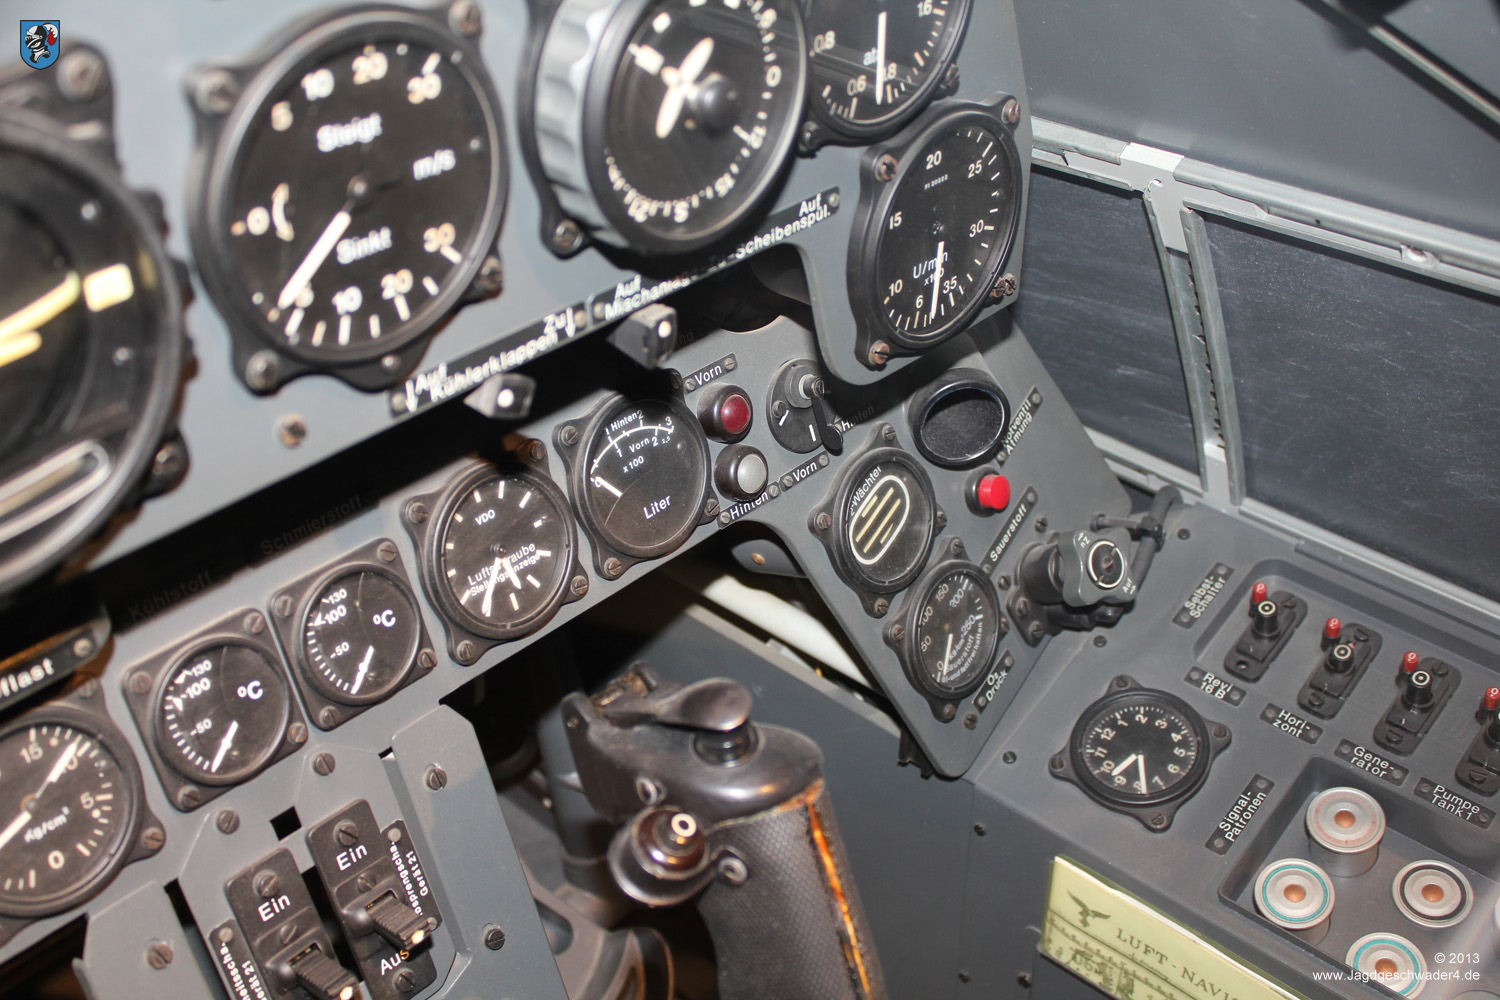 Focke Wulf Fw 190 Cockpit